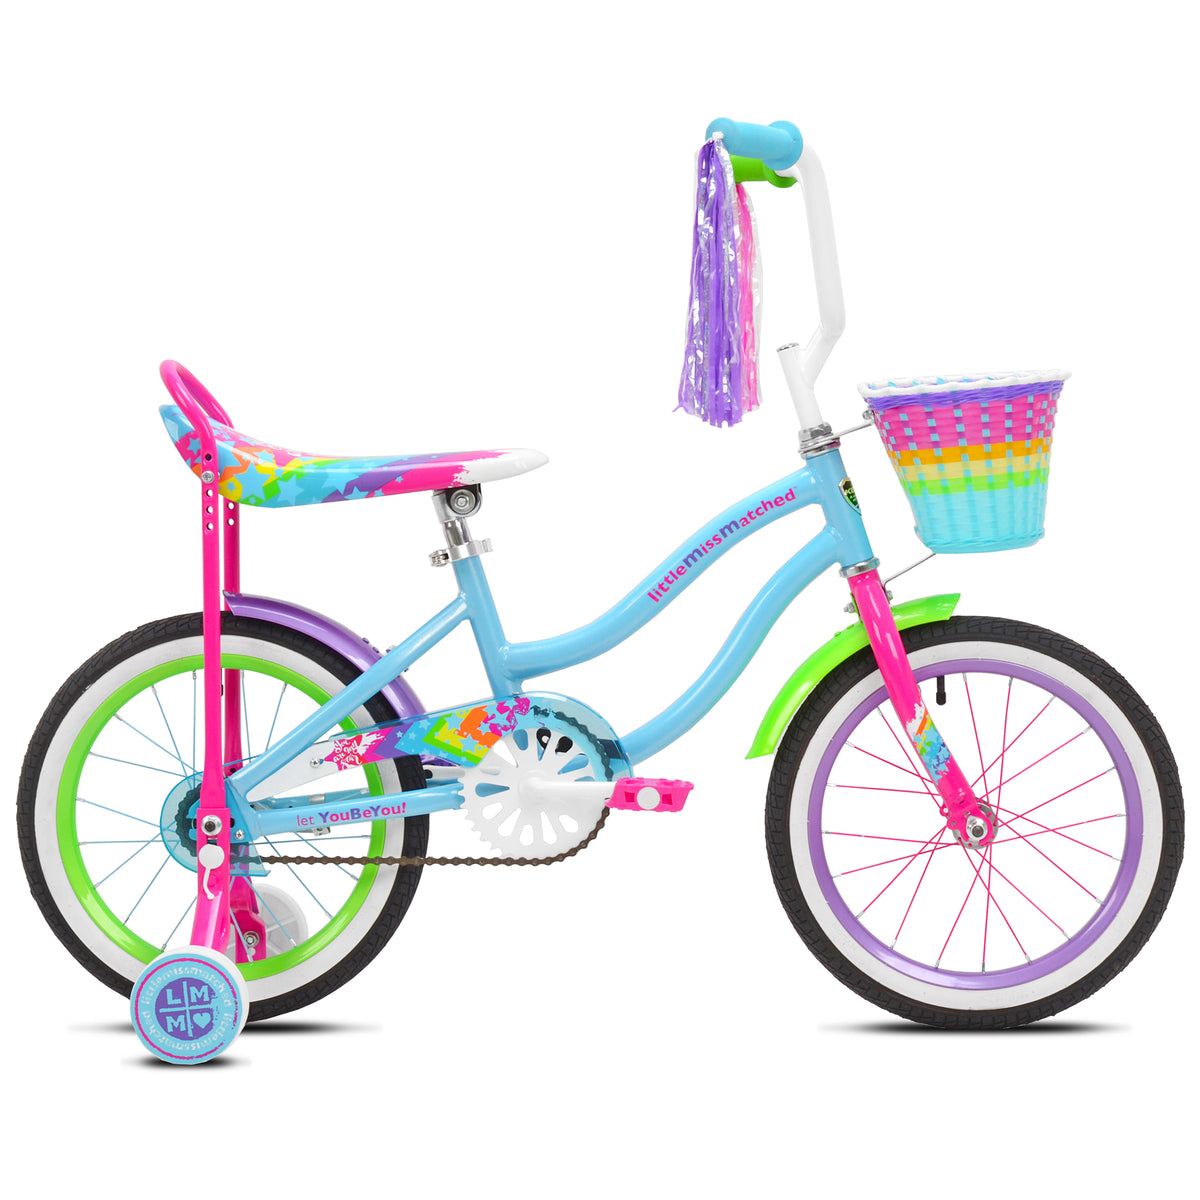 16" LittleMissMatched® High Rise | Bike for Kids Ages 4-6